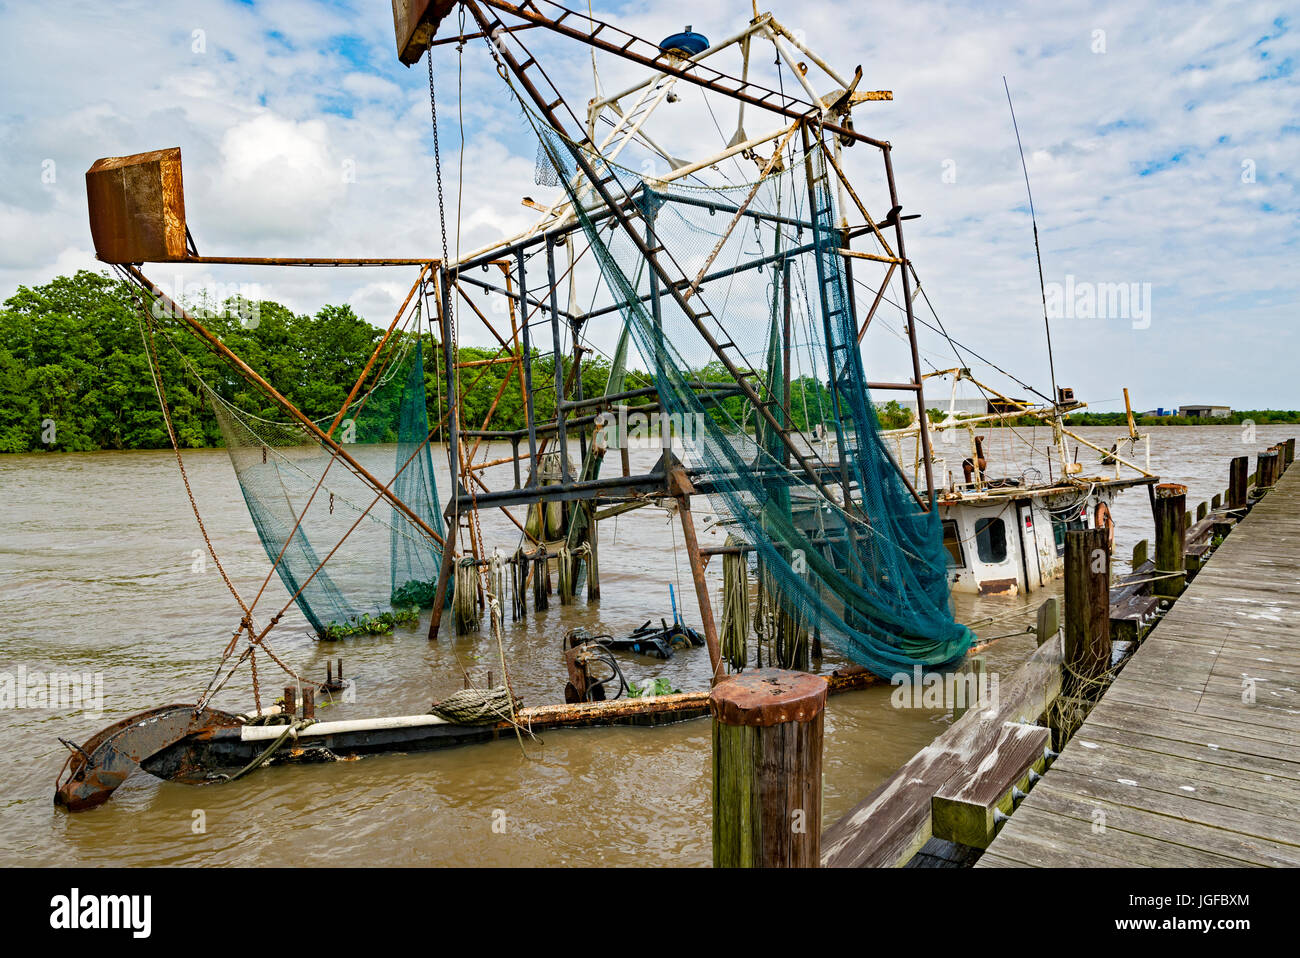 Louisiana, Iberia Parish, Delcambre Canal aka Bayou Carlin, commercial fishing boat sunk at dock Stock Photo